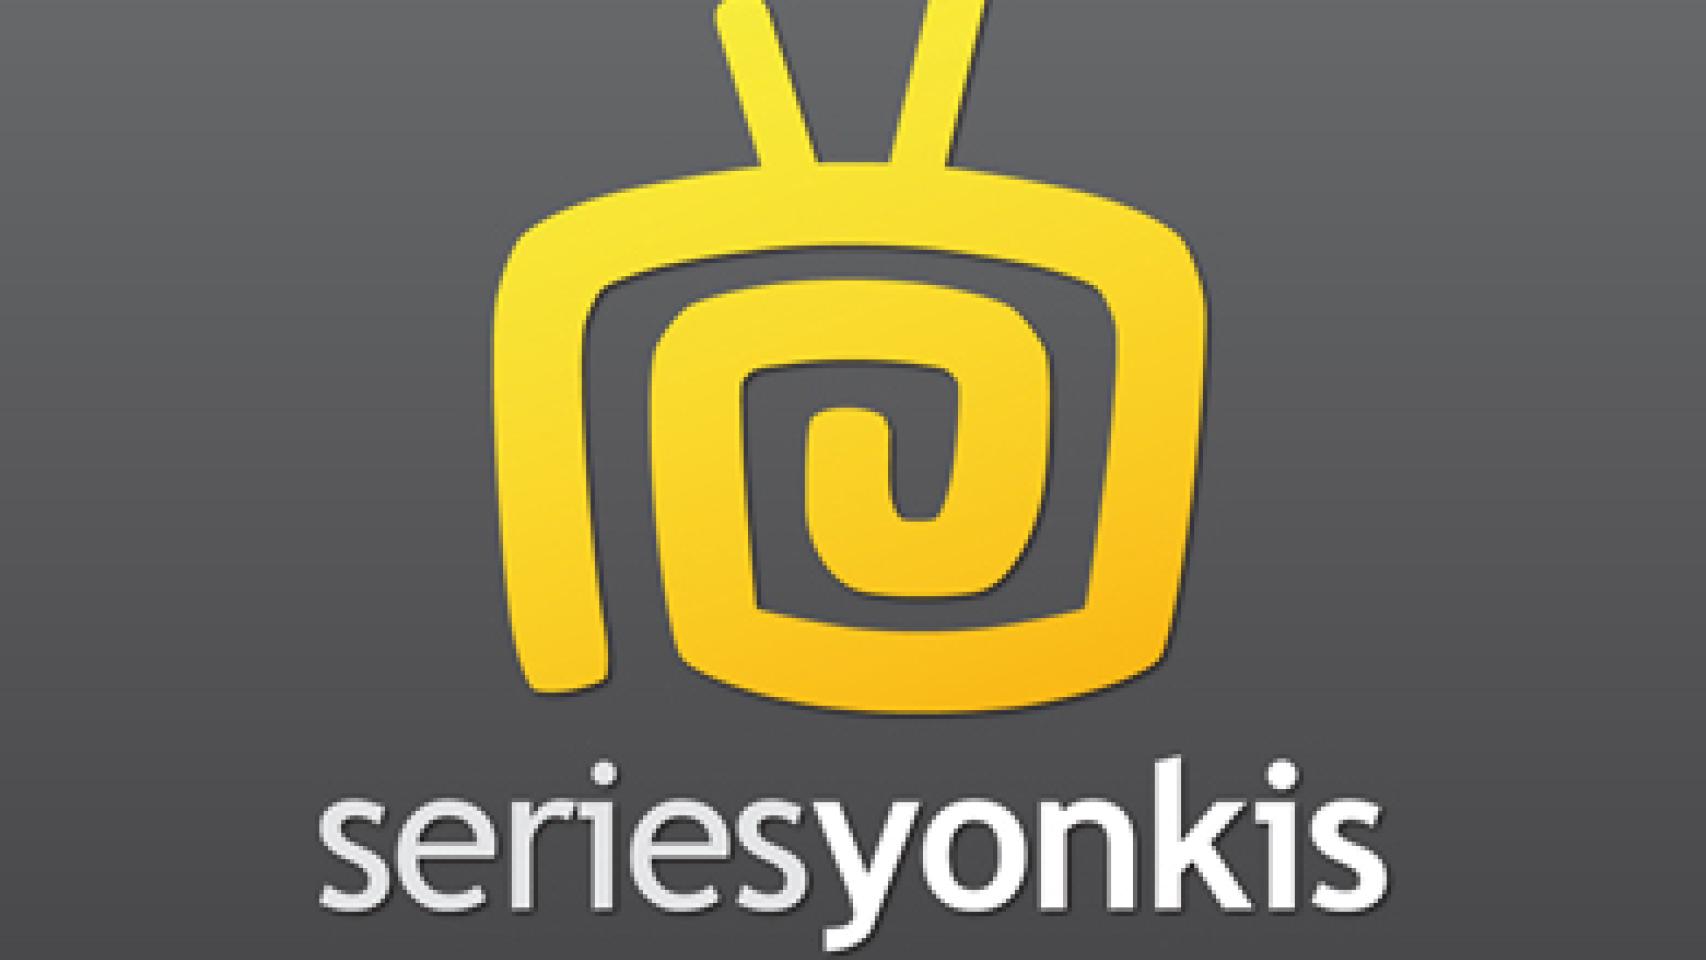 Series_Yonkis